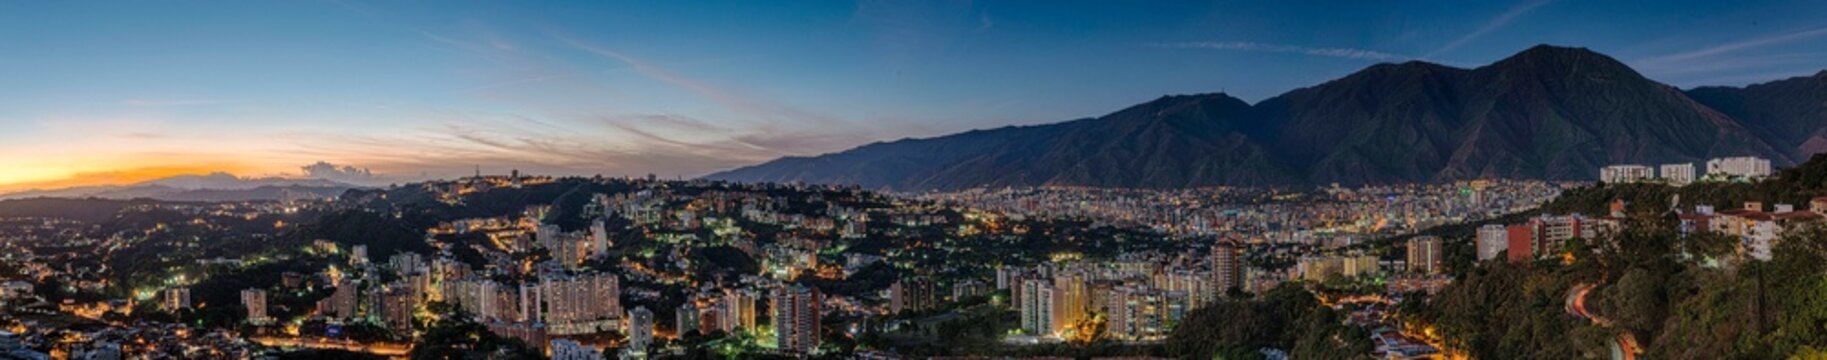 Panoramica Caracas - El Avila 14